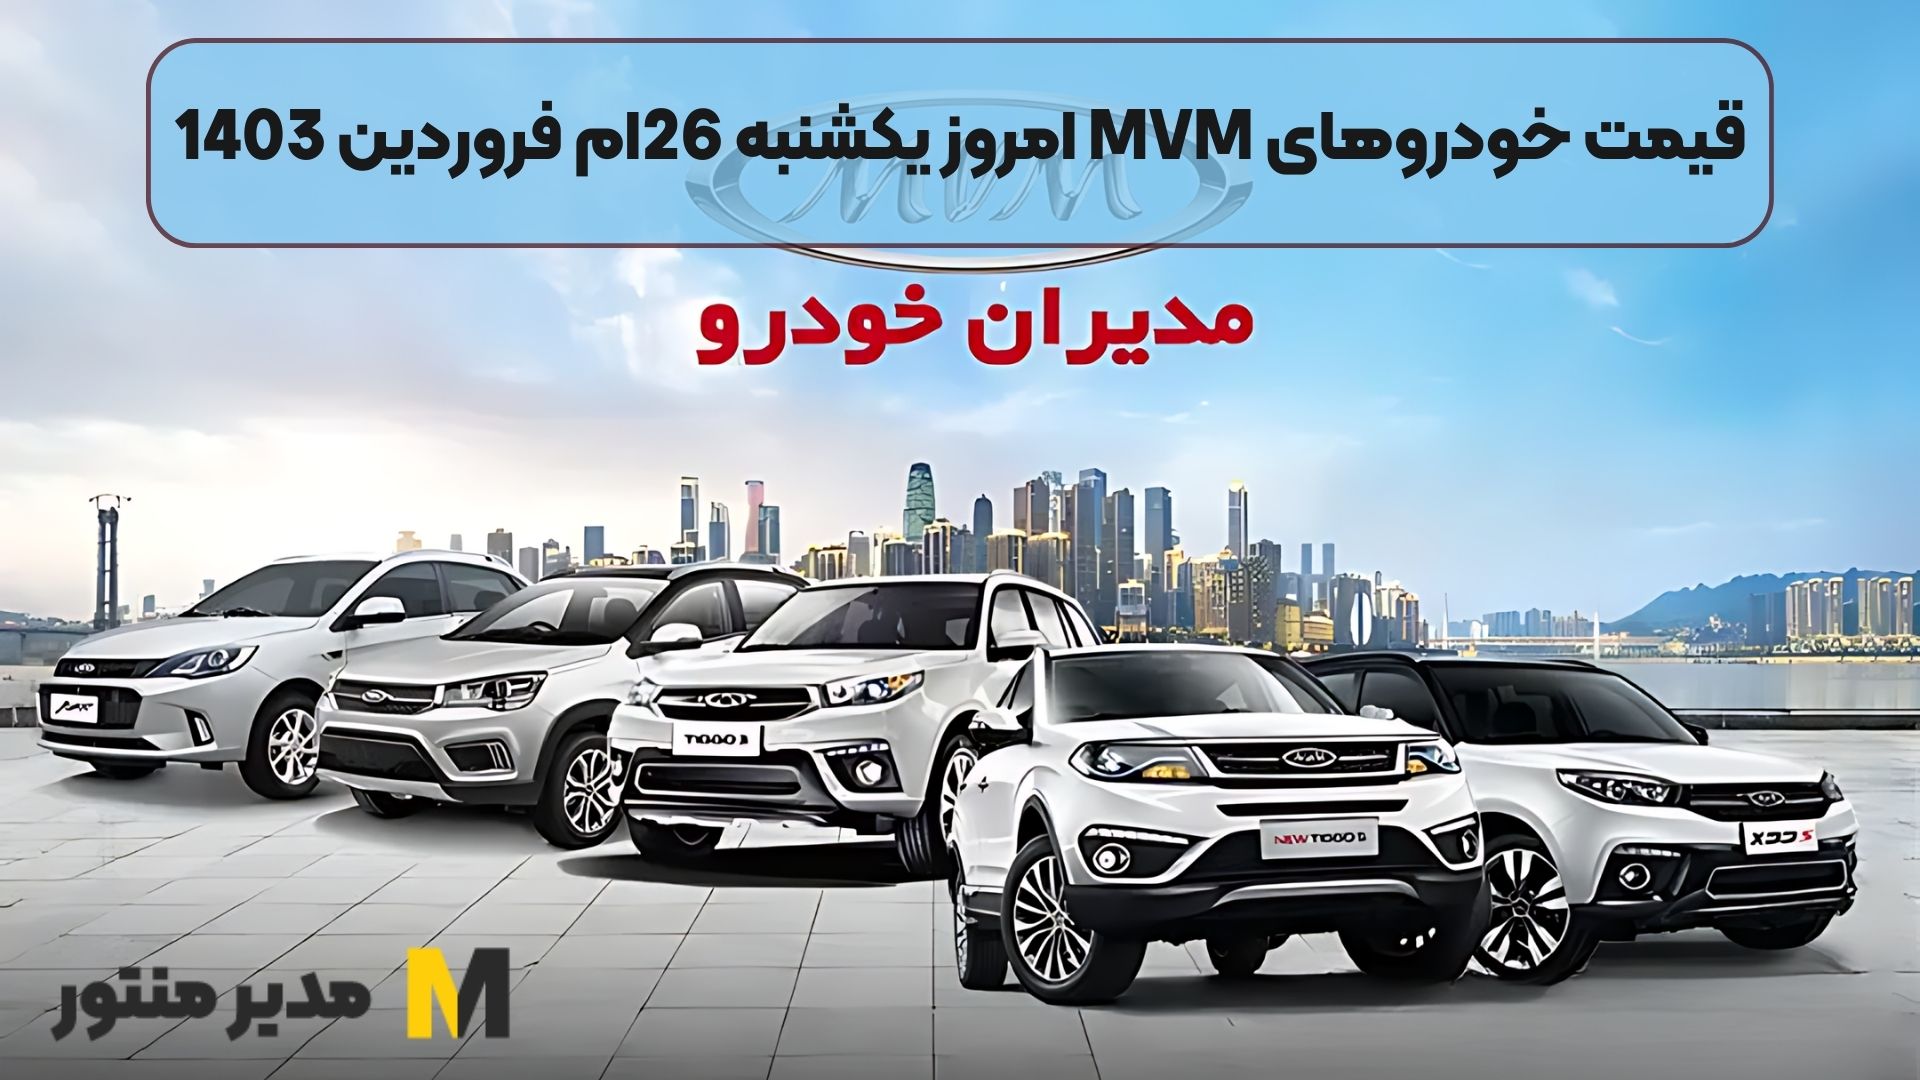 قیمت خودروهای MVM امروز یکشنبه 26ام فروردین 1403